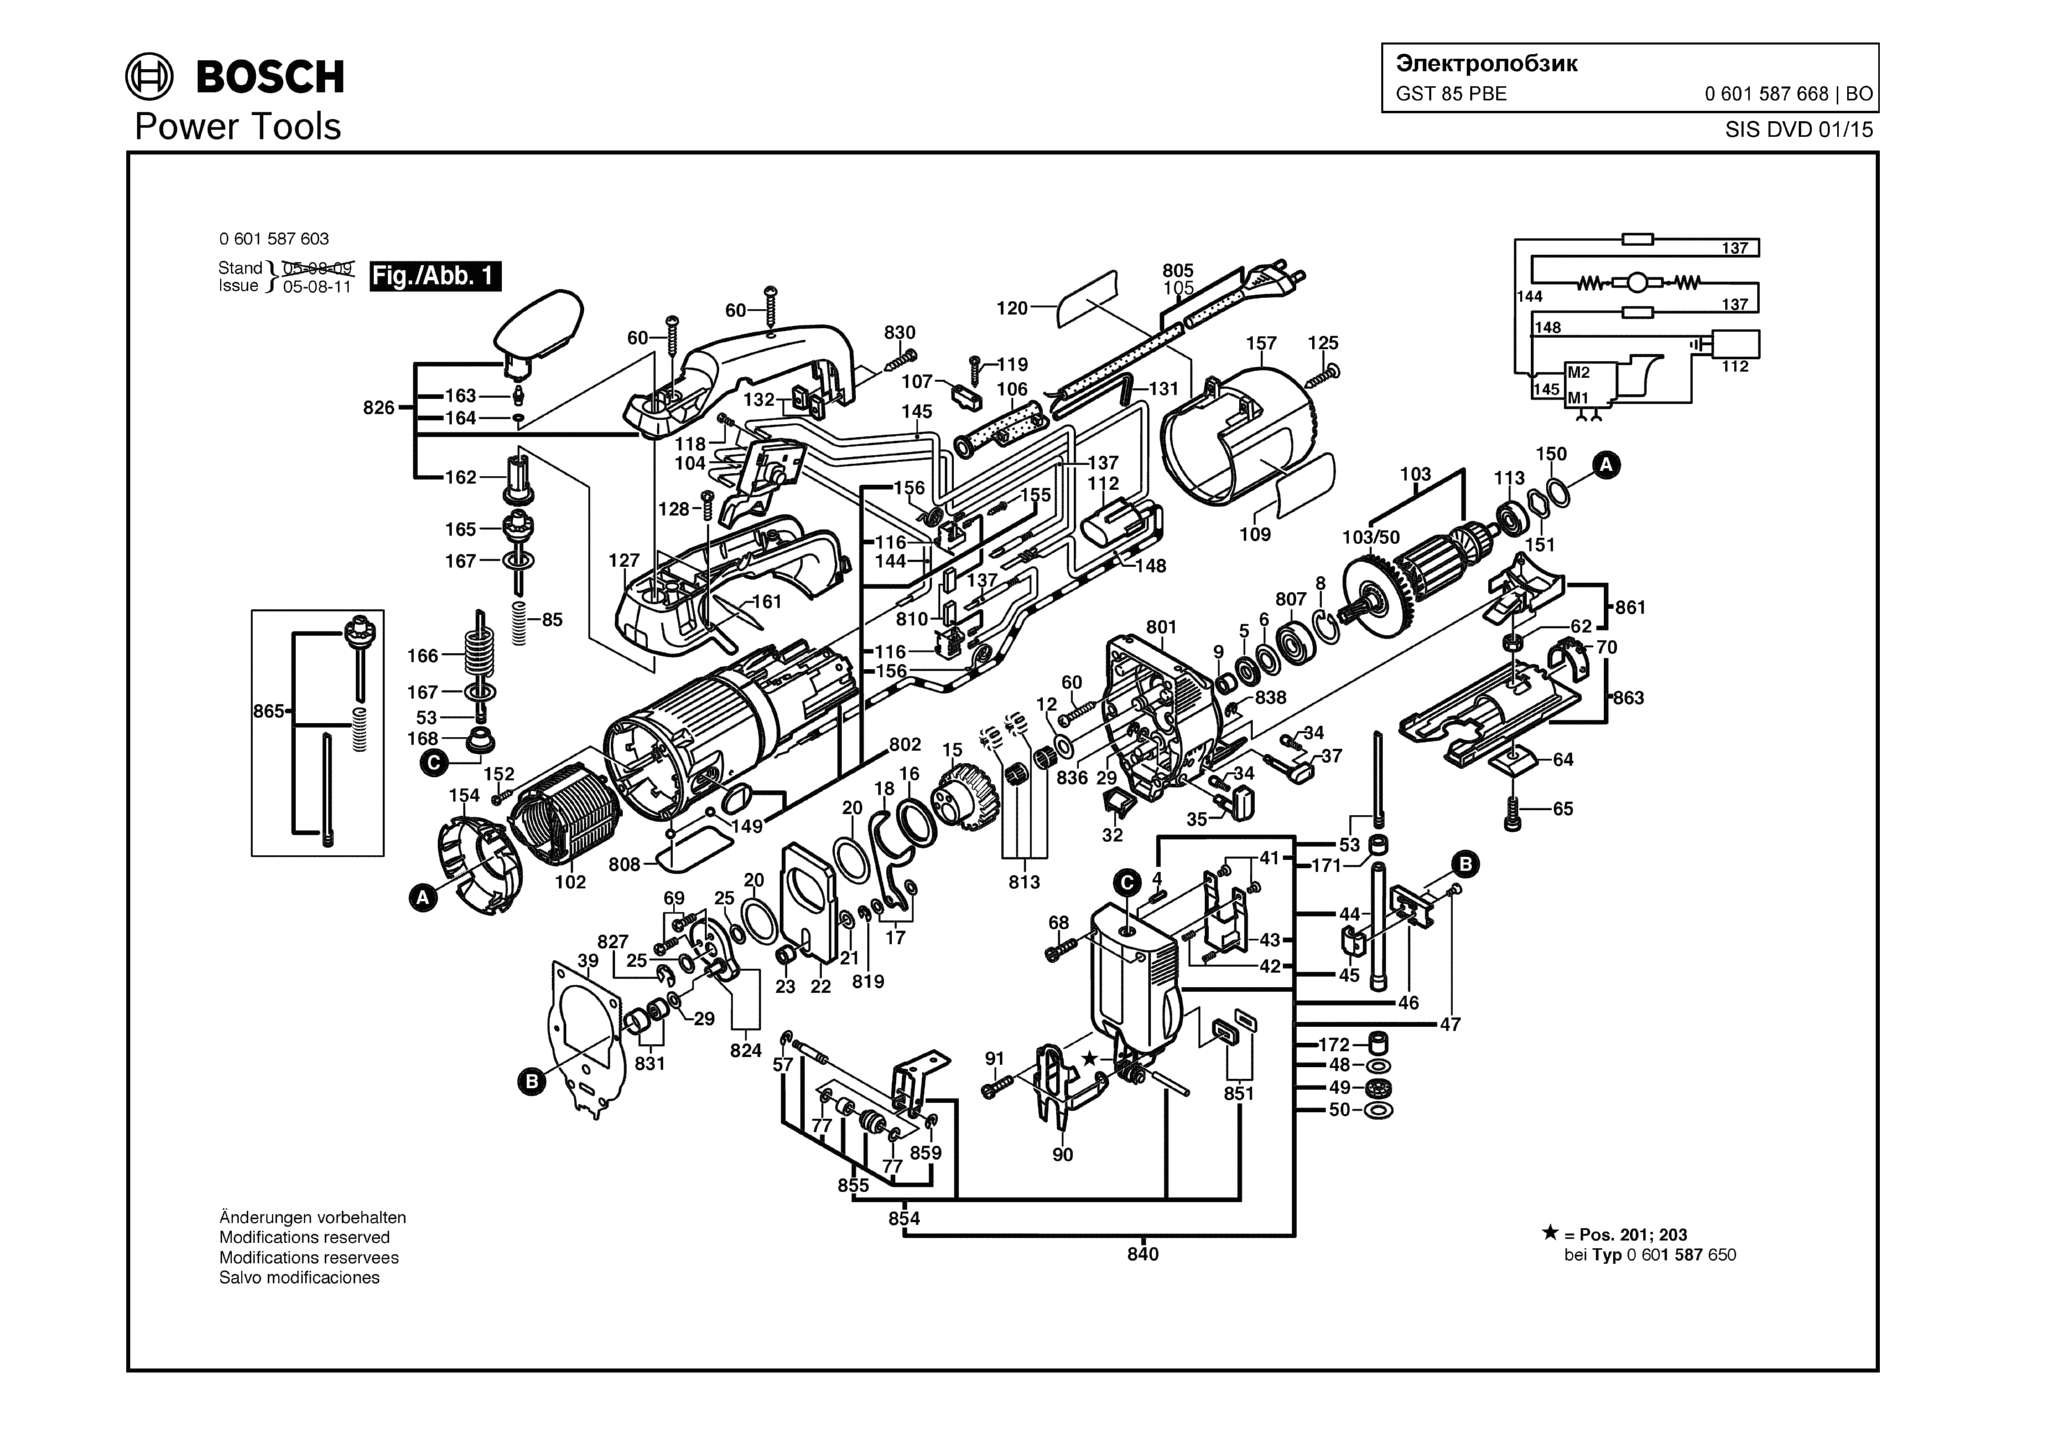 Запчасти, схема и деталировка Bosch GST 85 PBE (ТИП 0601587668)